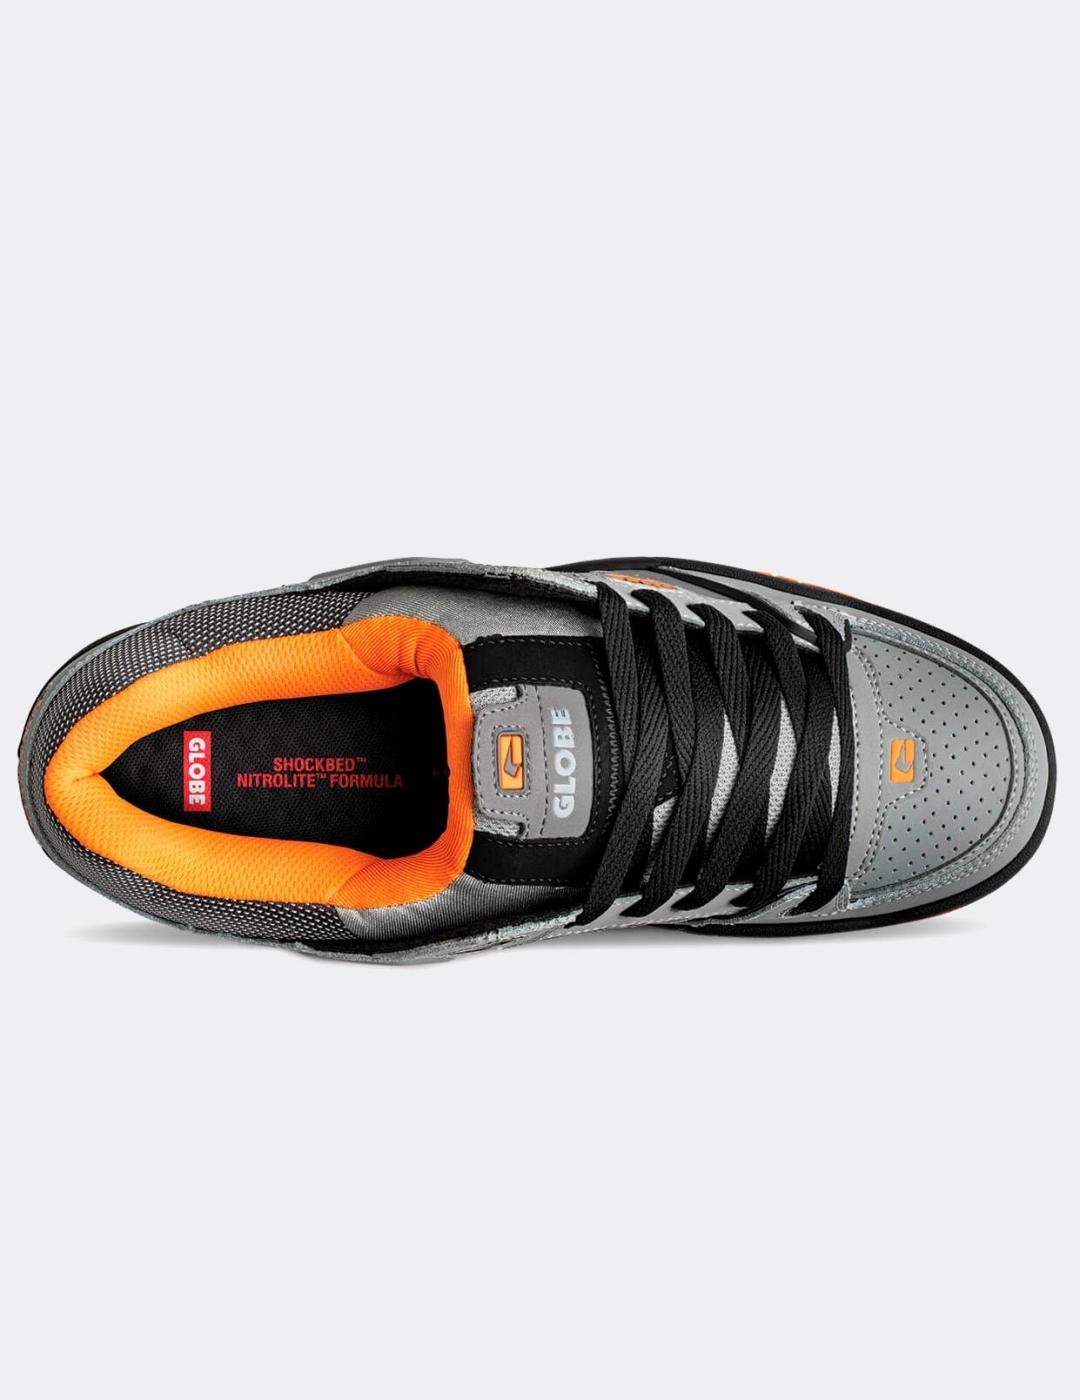 Zapatillas GLOBE FUSION - Black/Grey/Orange